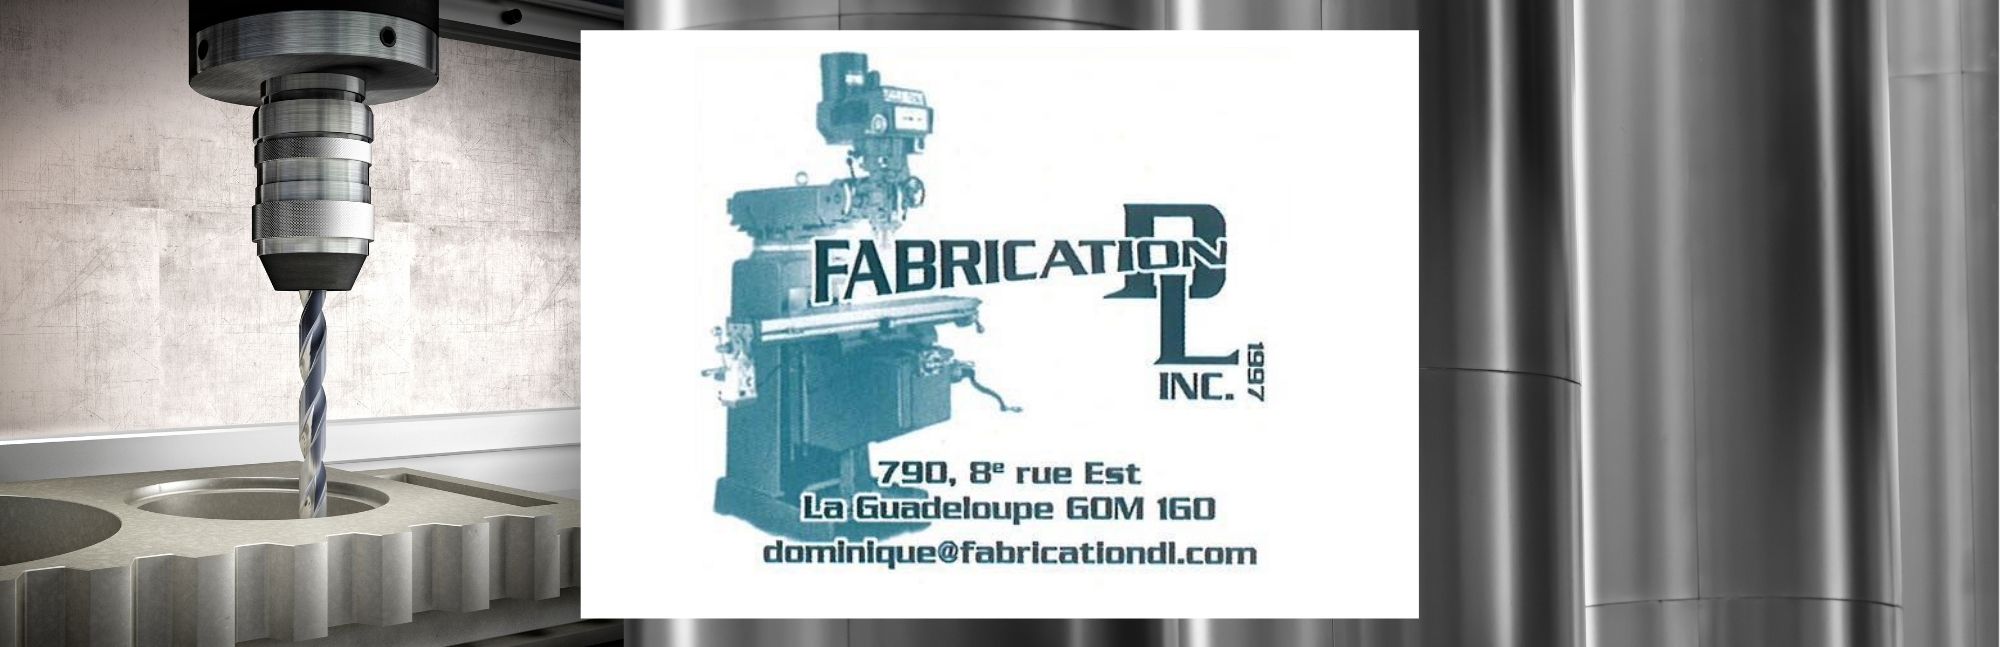 Fabrication DL Usinage La Guadeloupe 19